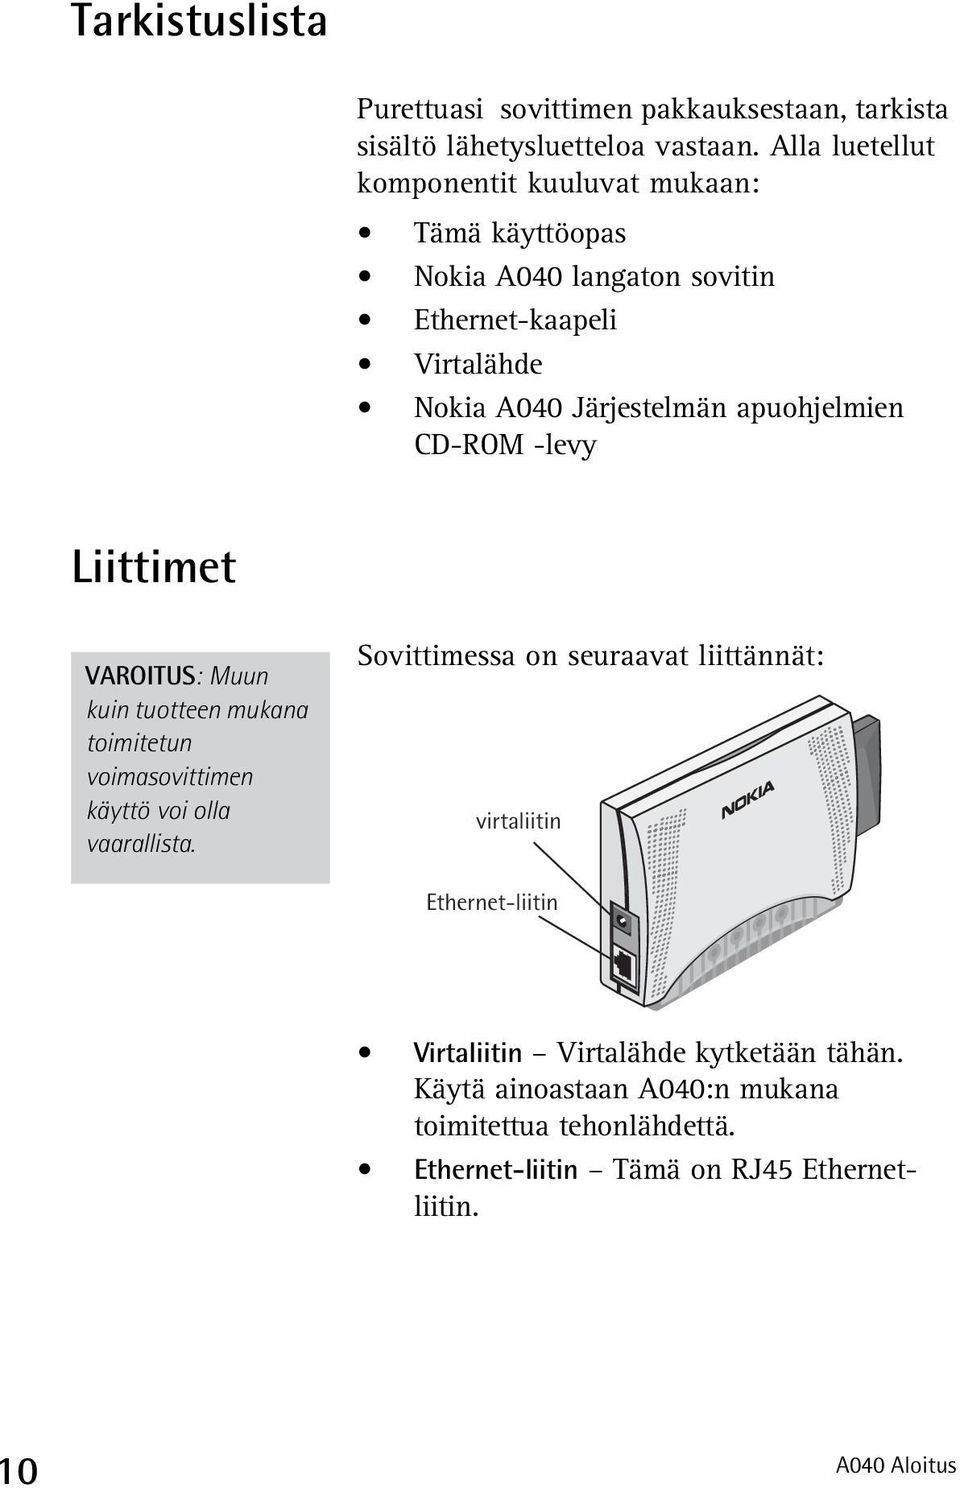 apuohjelmien CD-ROM -levy Liittimet VAROITUS: Muun kuin tuotteen mukana toimitetun voimasovittimen käyttö voi olla vaarallista.